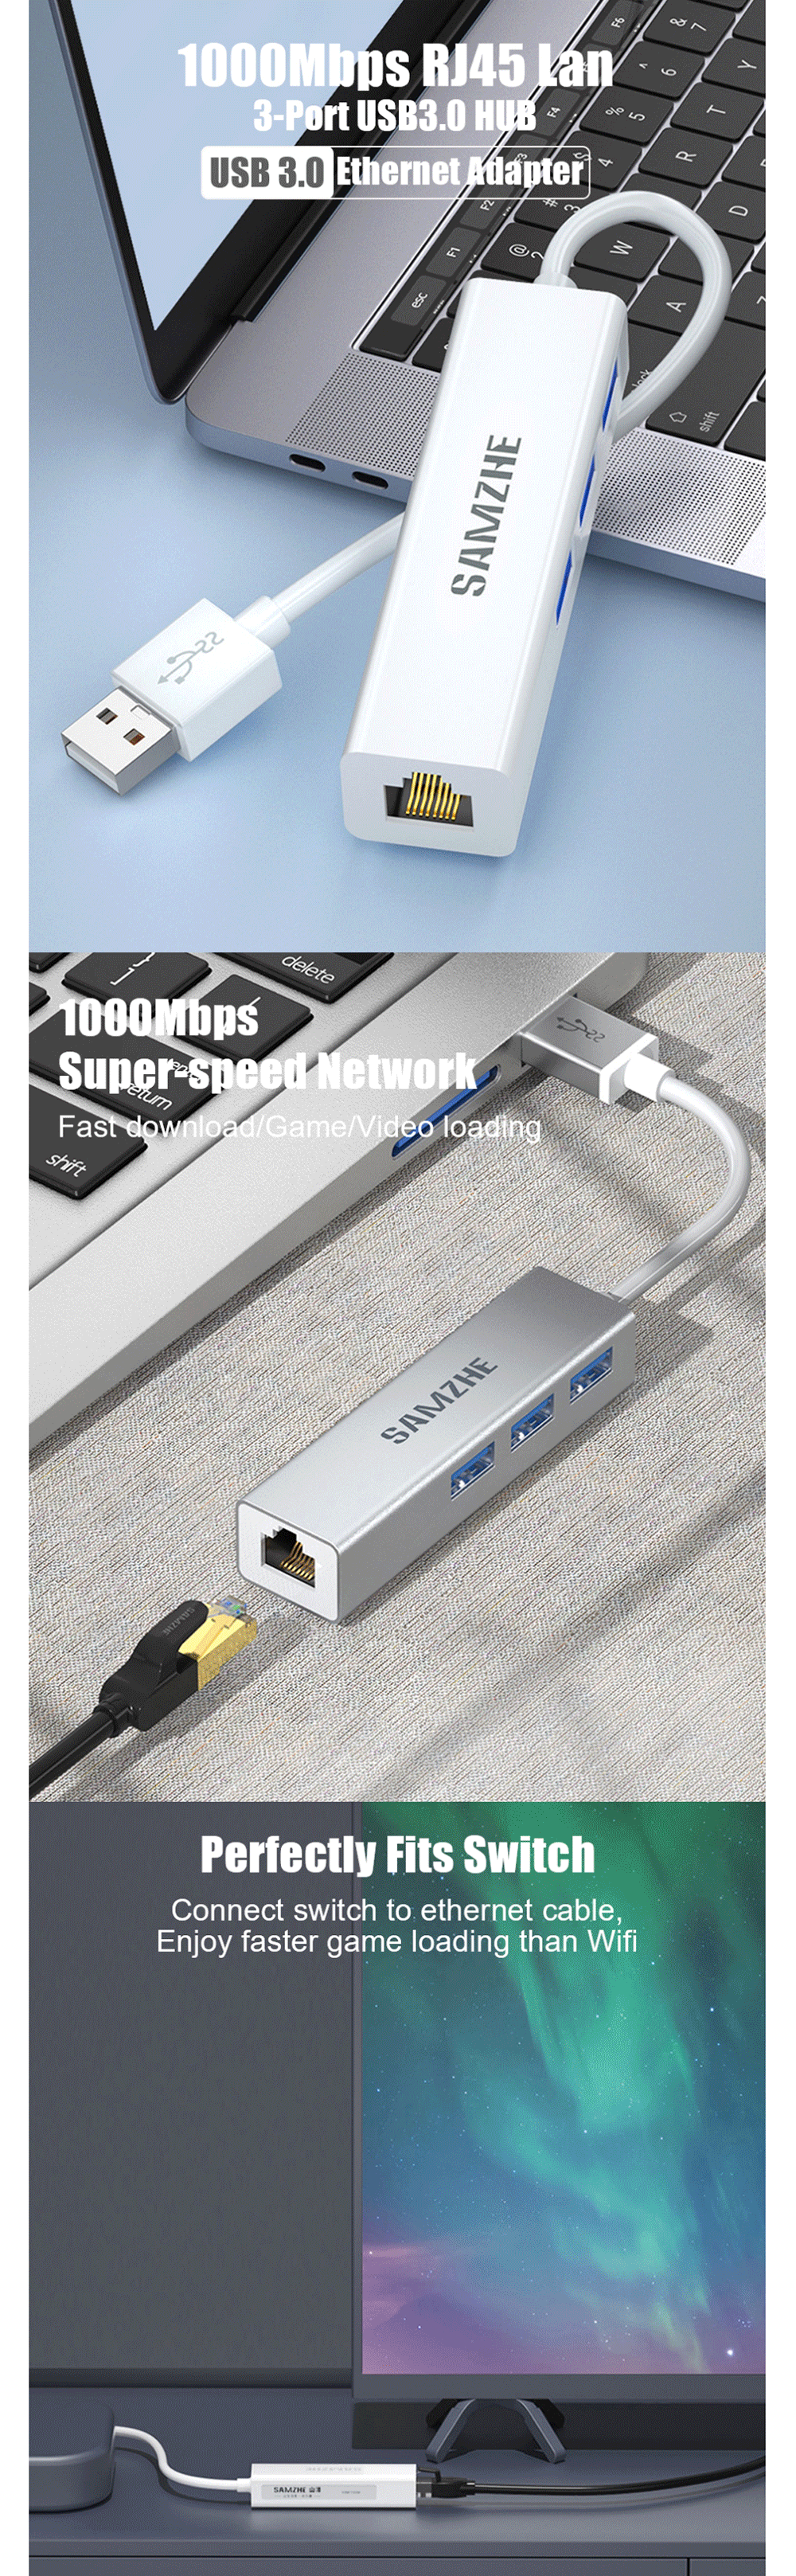 SAMZHE-3-Port-USB30-Hub-Splitter-RJ45-Gigabit-Ethernet-Adapter-Wired-Network-Card-Converter-for-Lapt-1750790